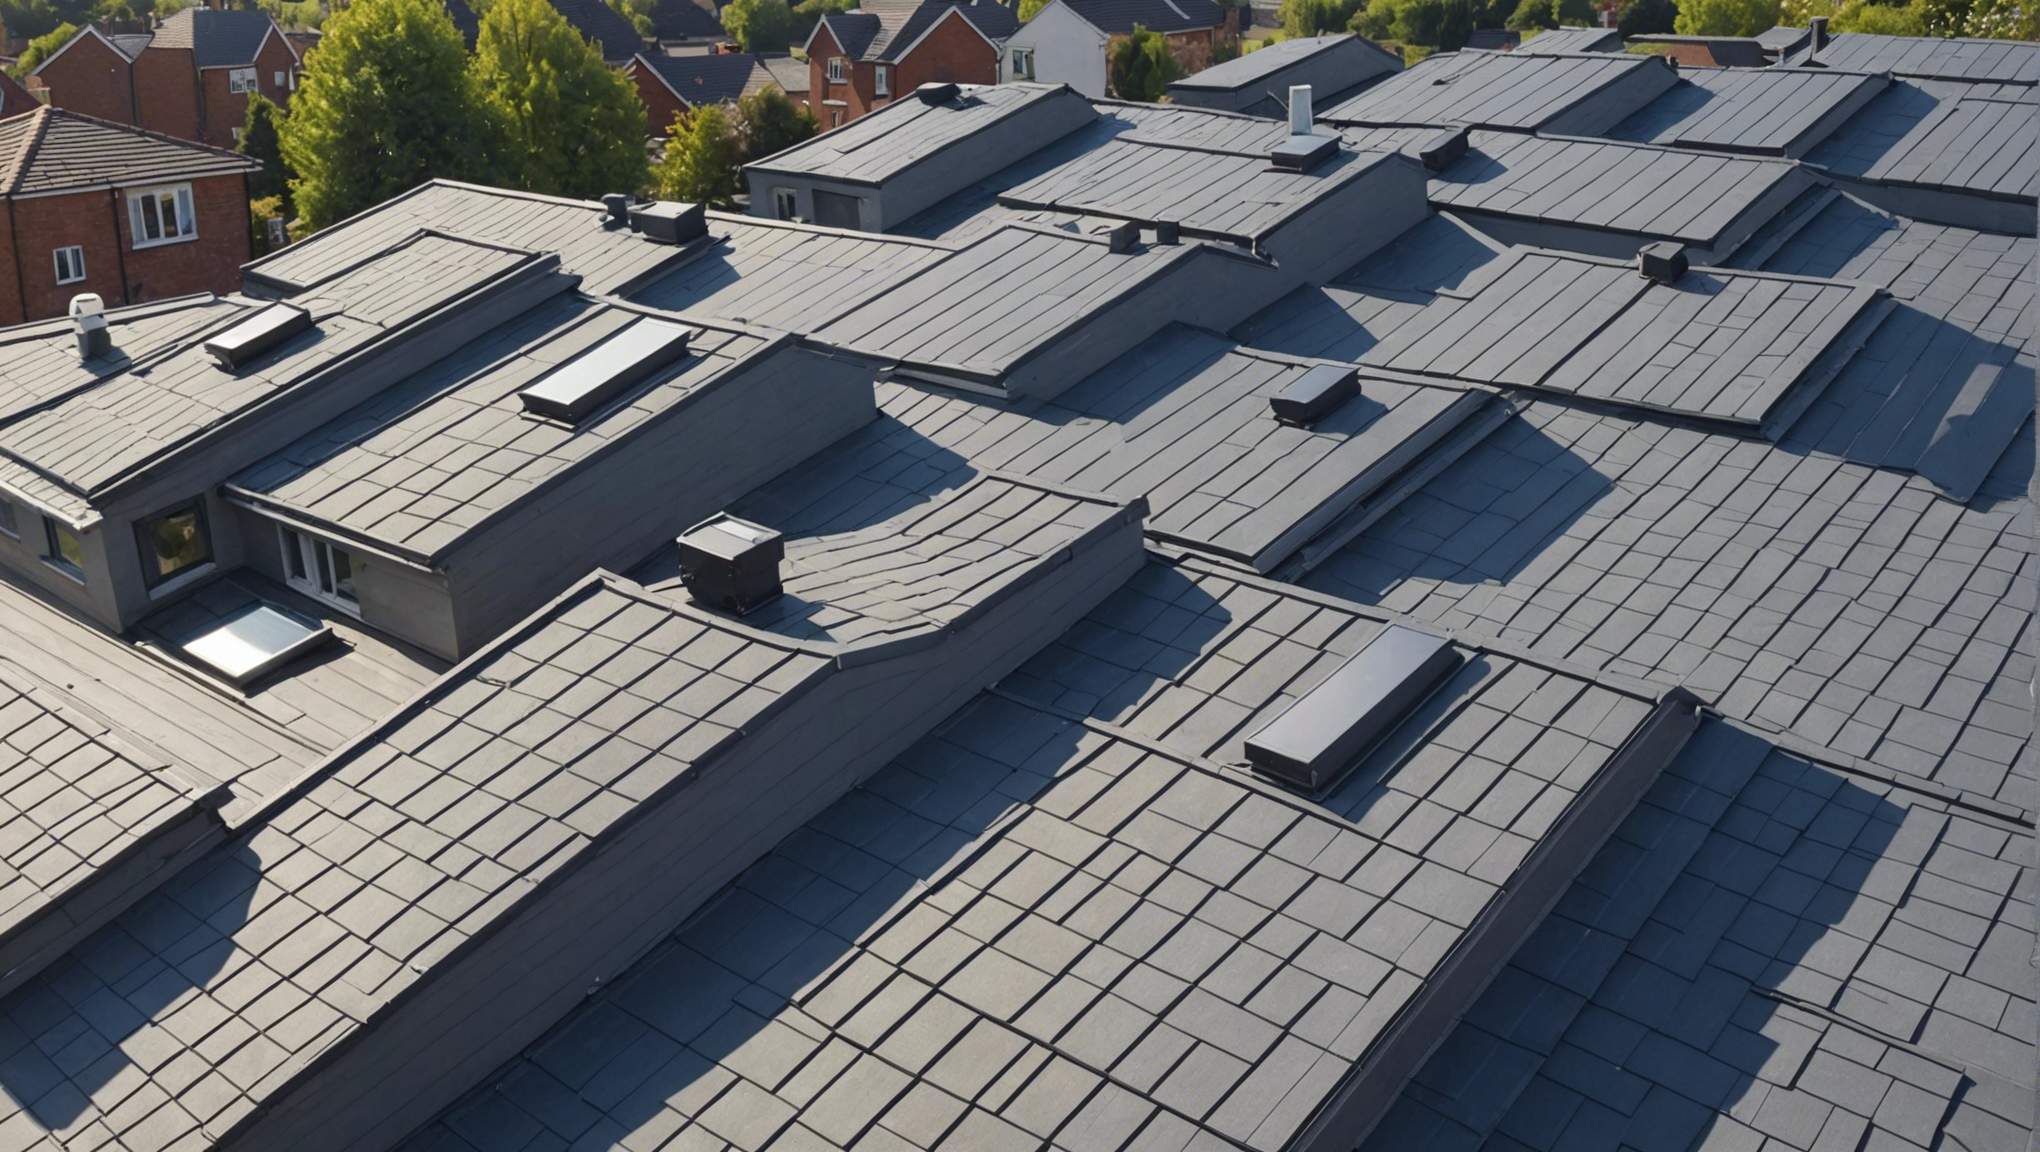 découvrez les prix au mètre carré pour l'isolation de toiture par l'extérieur. obtenez les meilleures solutions d'isolation pour votre toit avec notre guide complet.